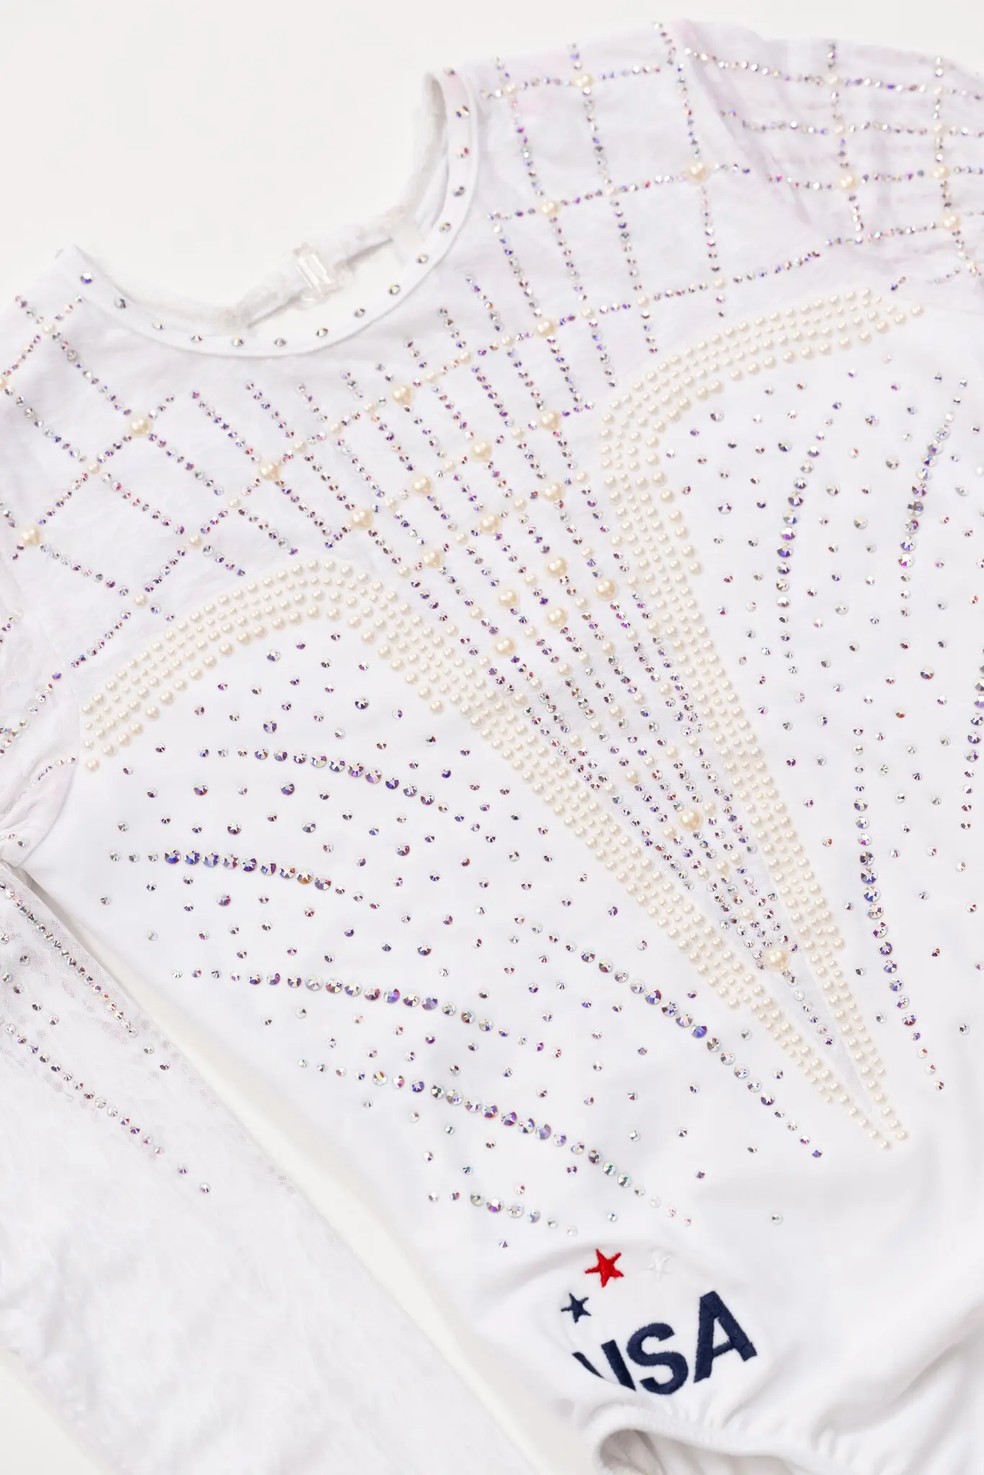 3.494 cristais e 970 pérolas que decoram o collant de competição Freedom's Grace — Foto: GK Elite Sportswear